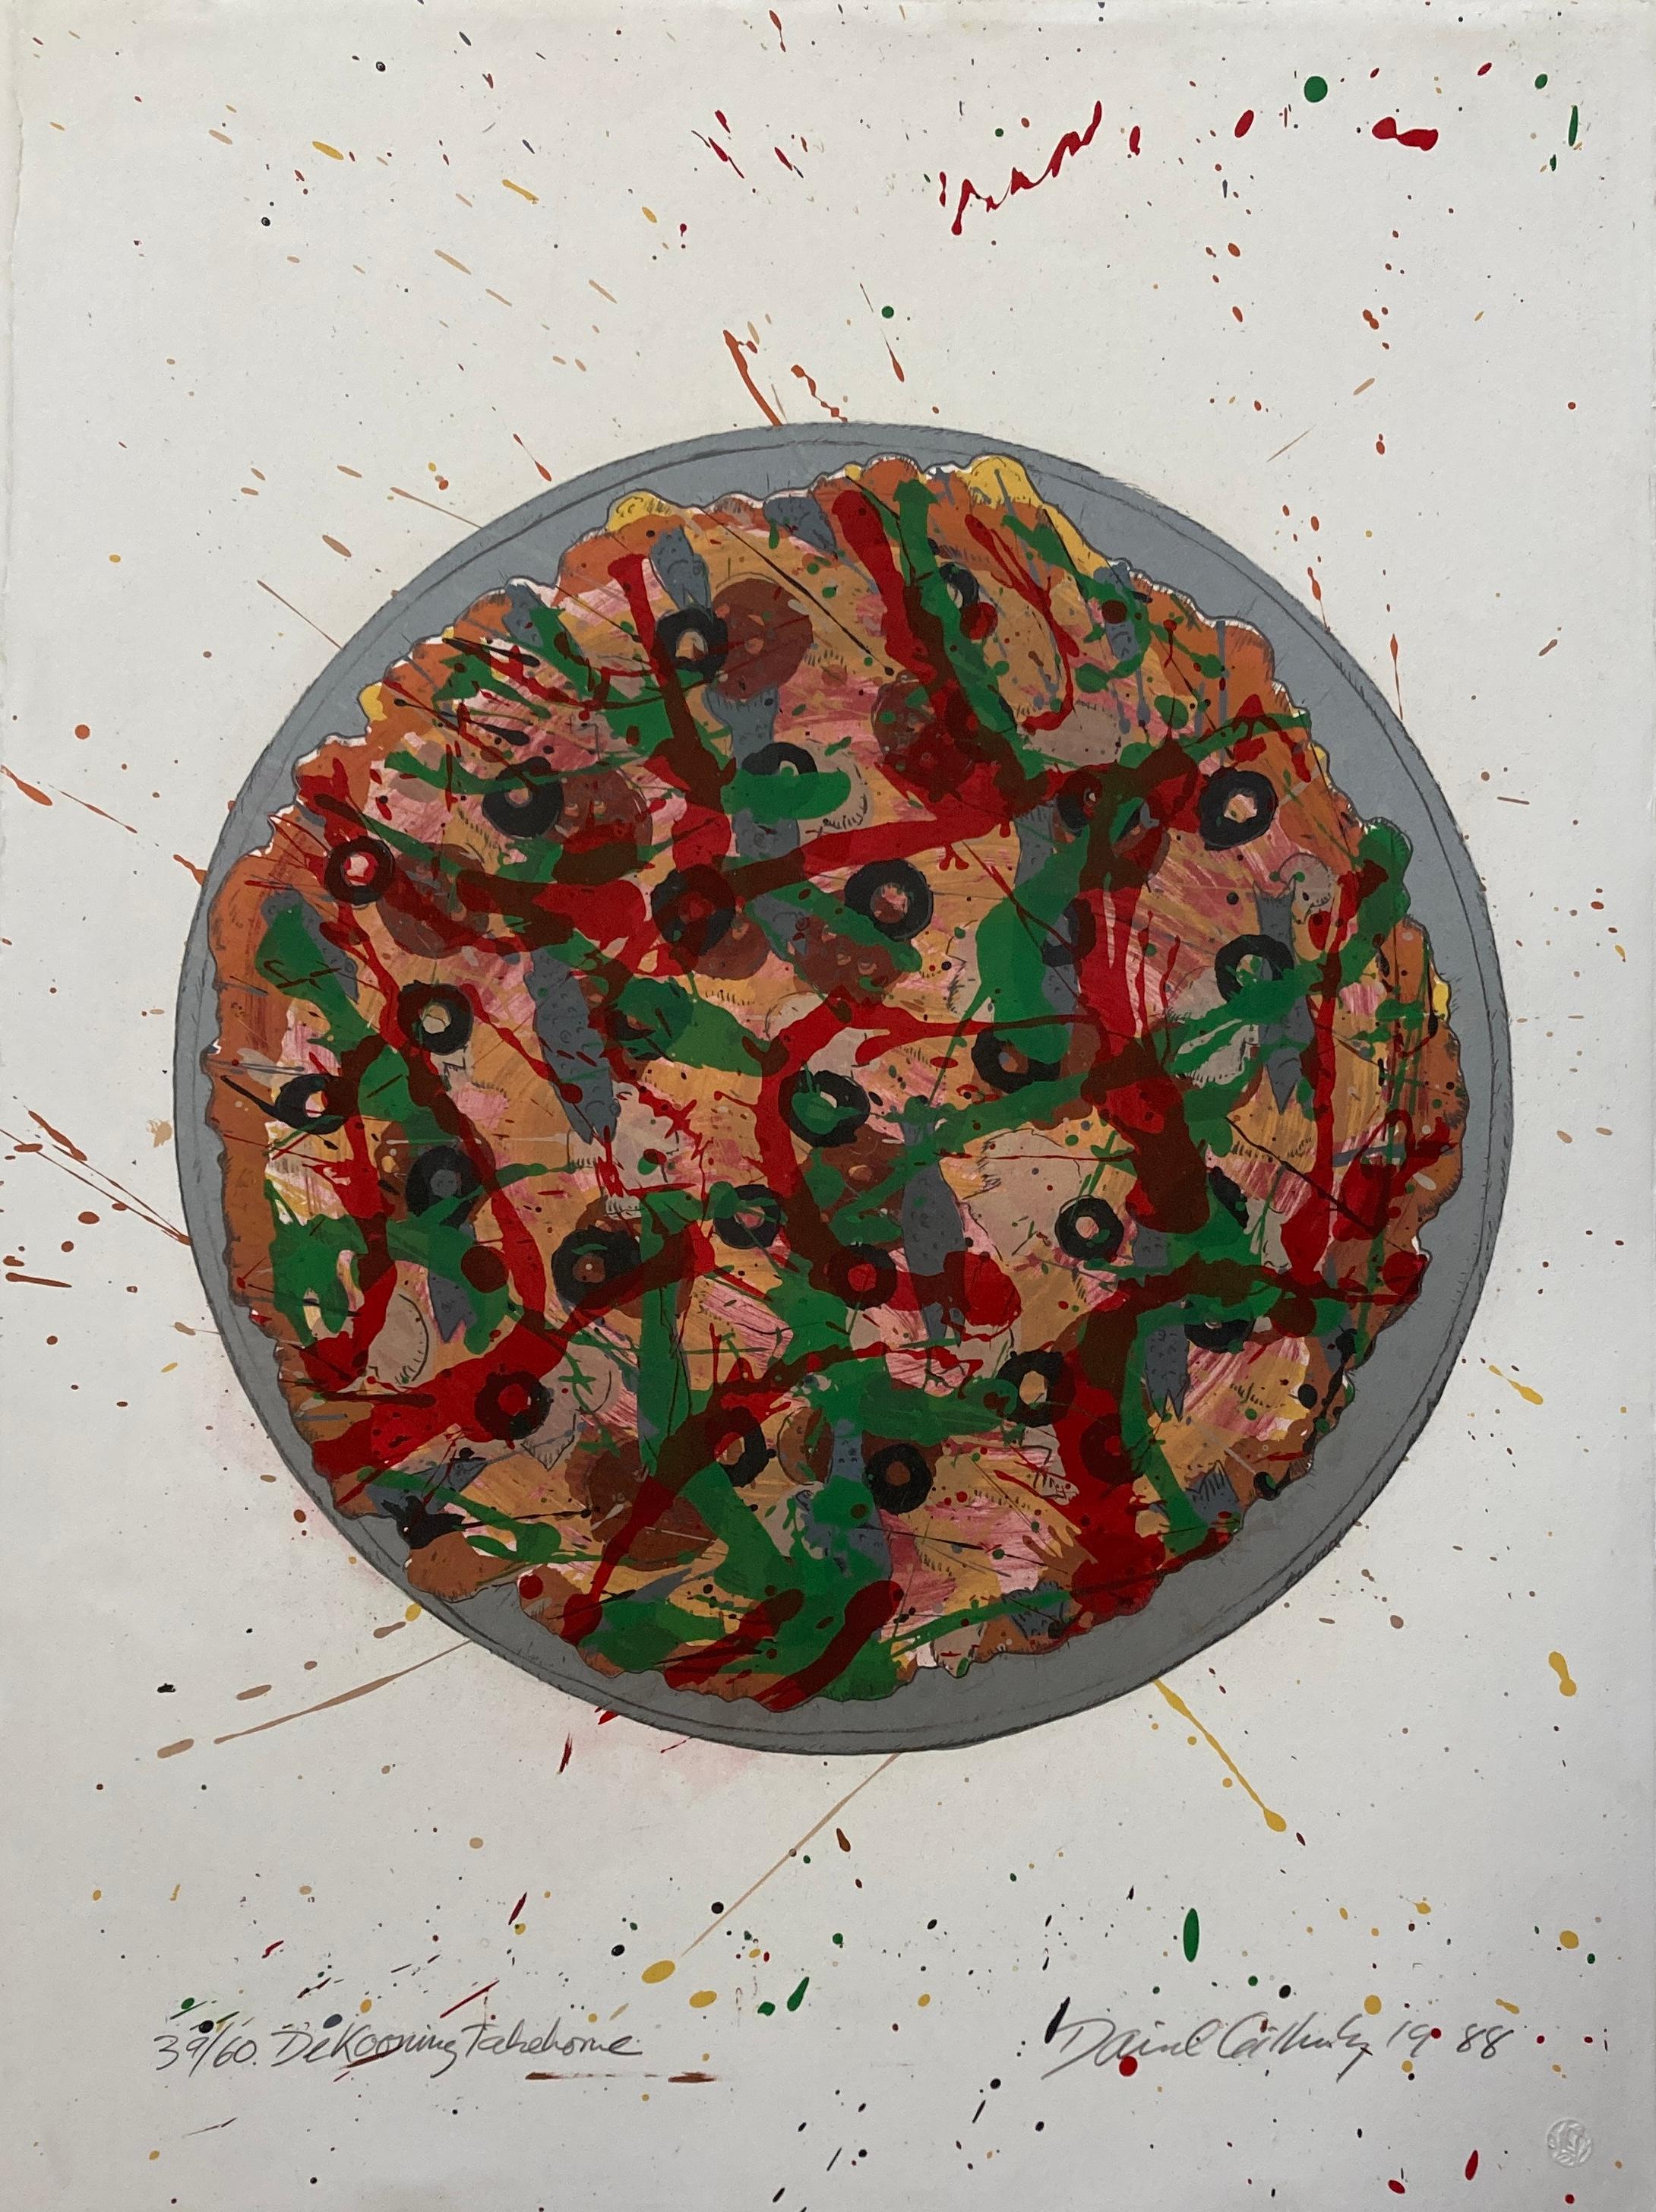 David Gilhooly (1943-2013)
Pizza à emporter de De Kooning, 1988
Lithographie en 10 couleurs sur papier vélin
Édition 39/60
Signé et daté en bas à droite
Éditée et titrée en bas à gauche
Publié par Magnolia Editions, Oakland, CA avec cachet en bas à